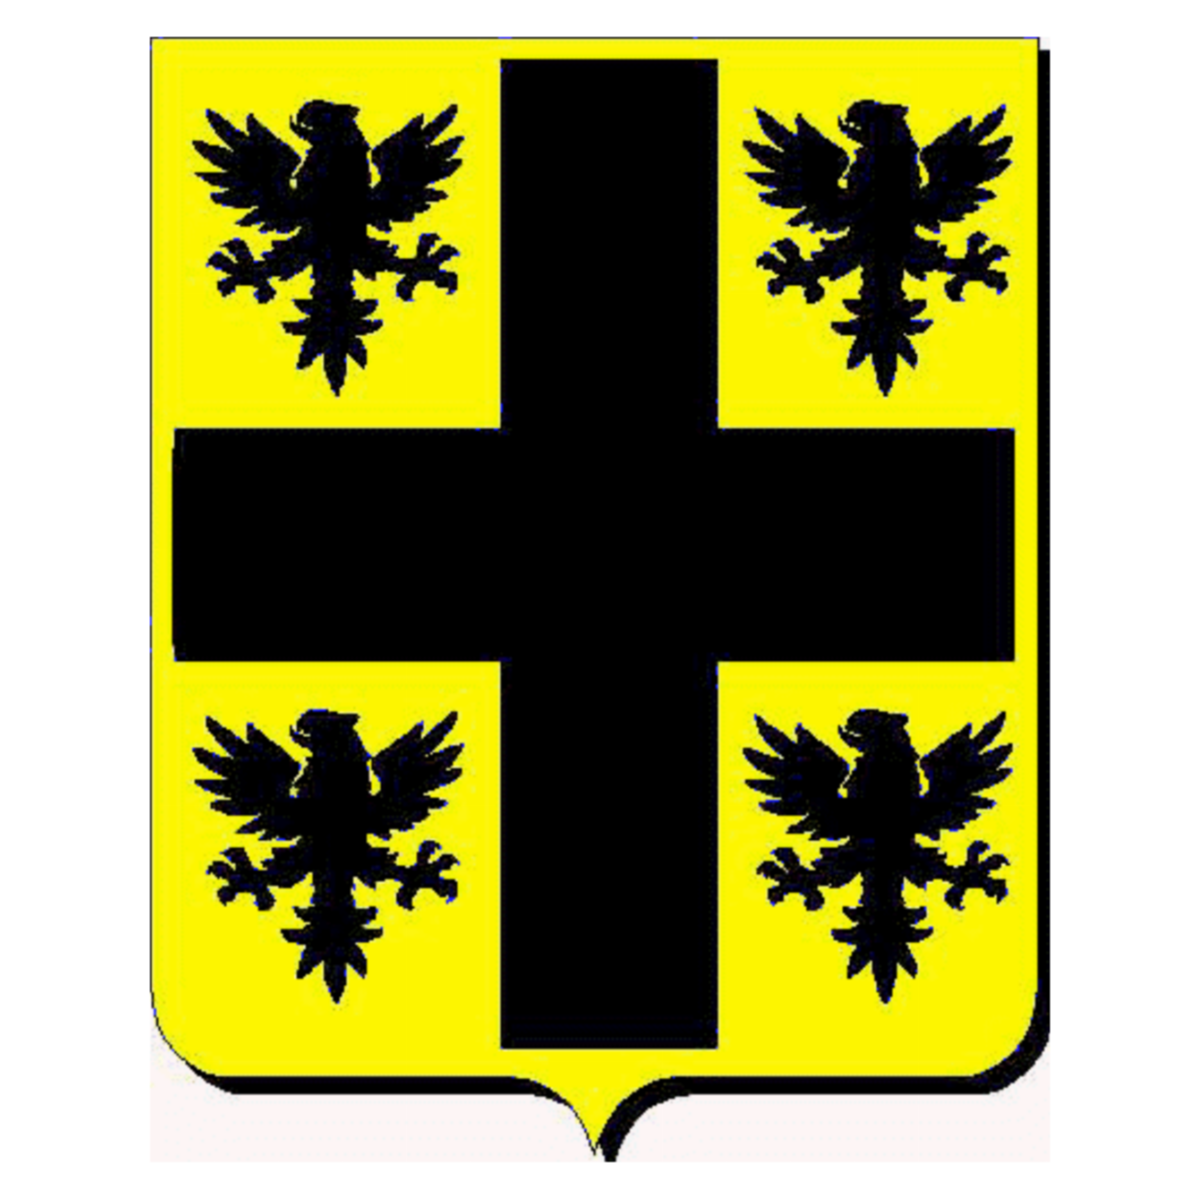 Coat of arms of familySalcedo